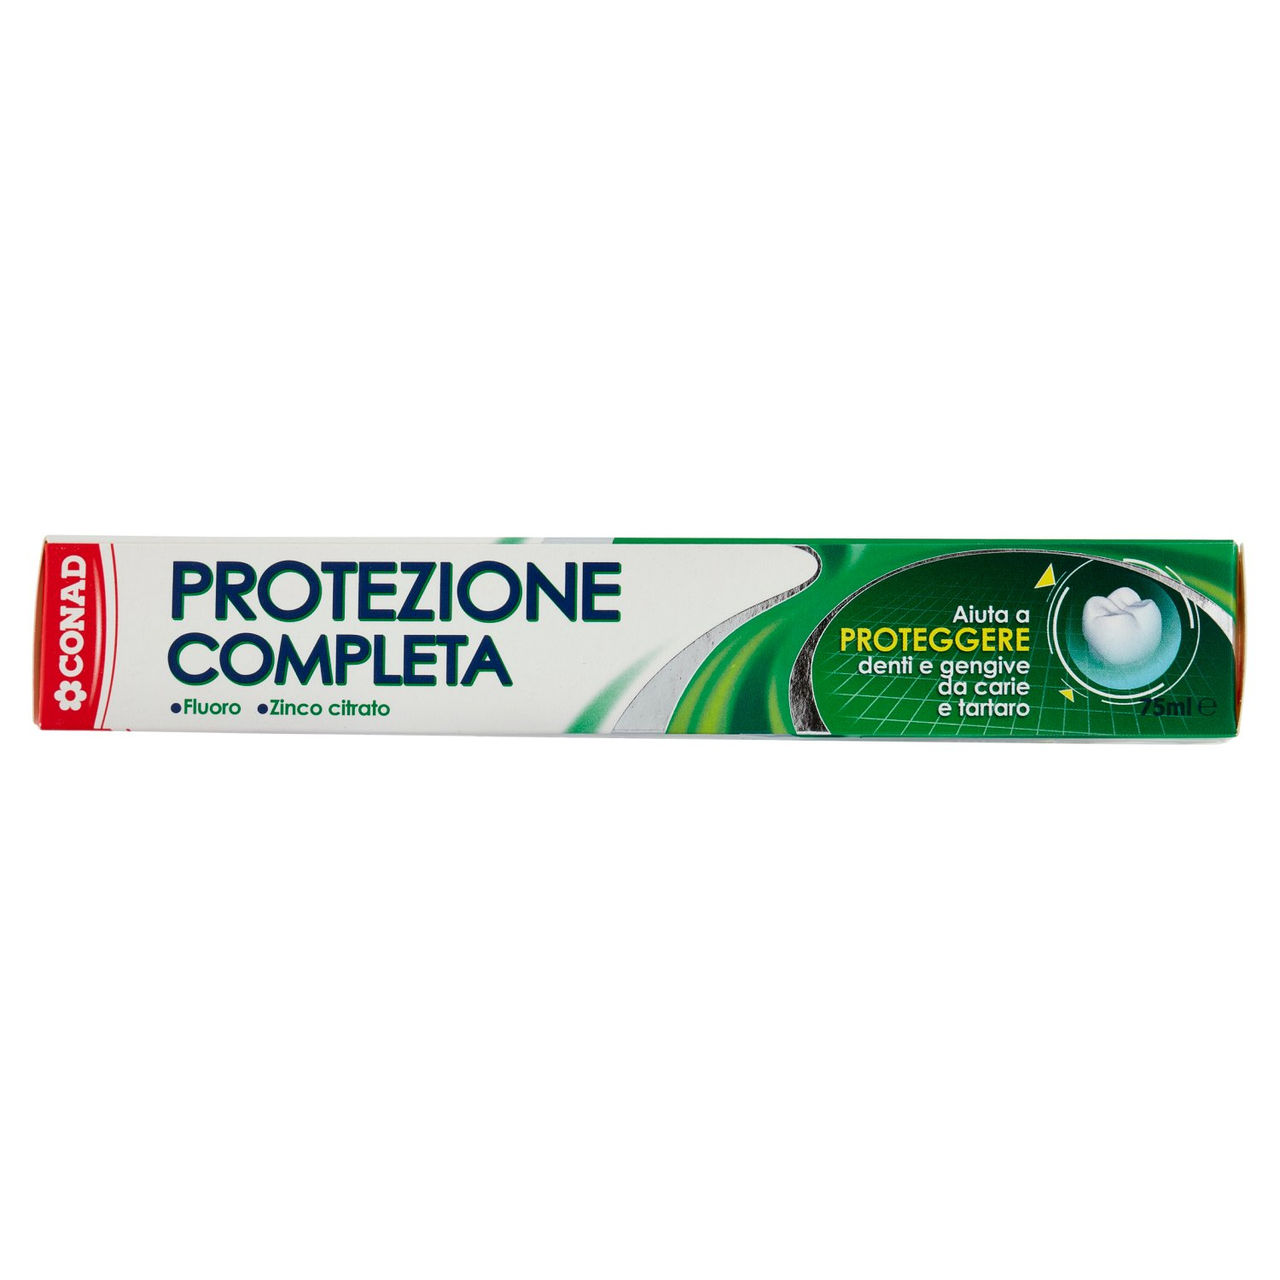 Dentifricio Protezione Completa 75 ml.  CONAD